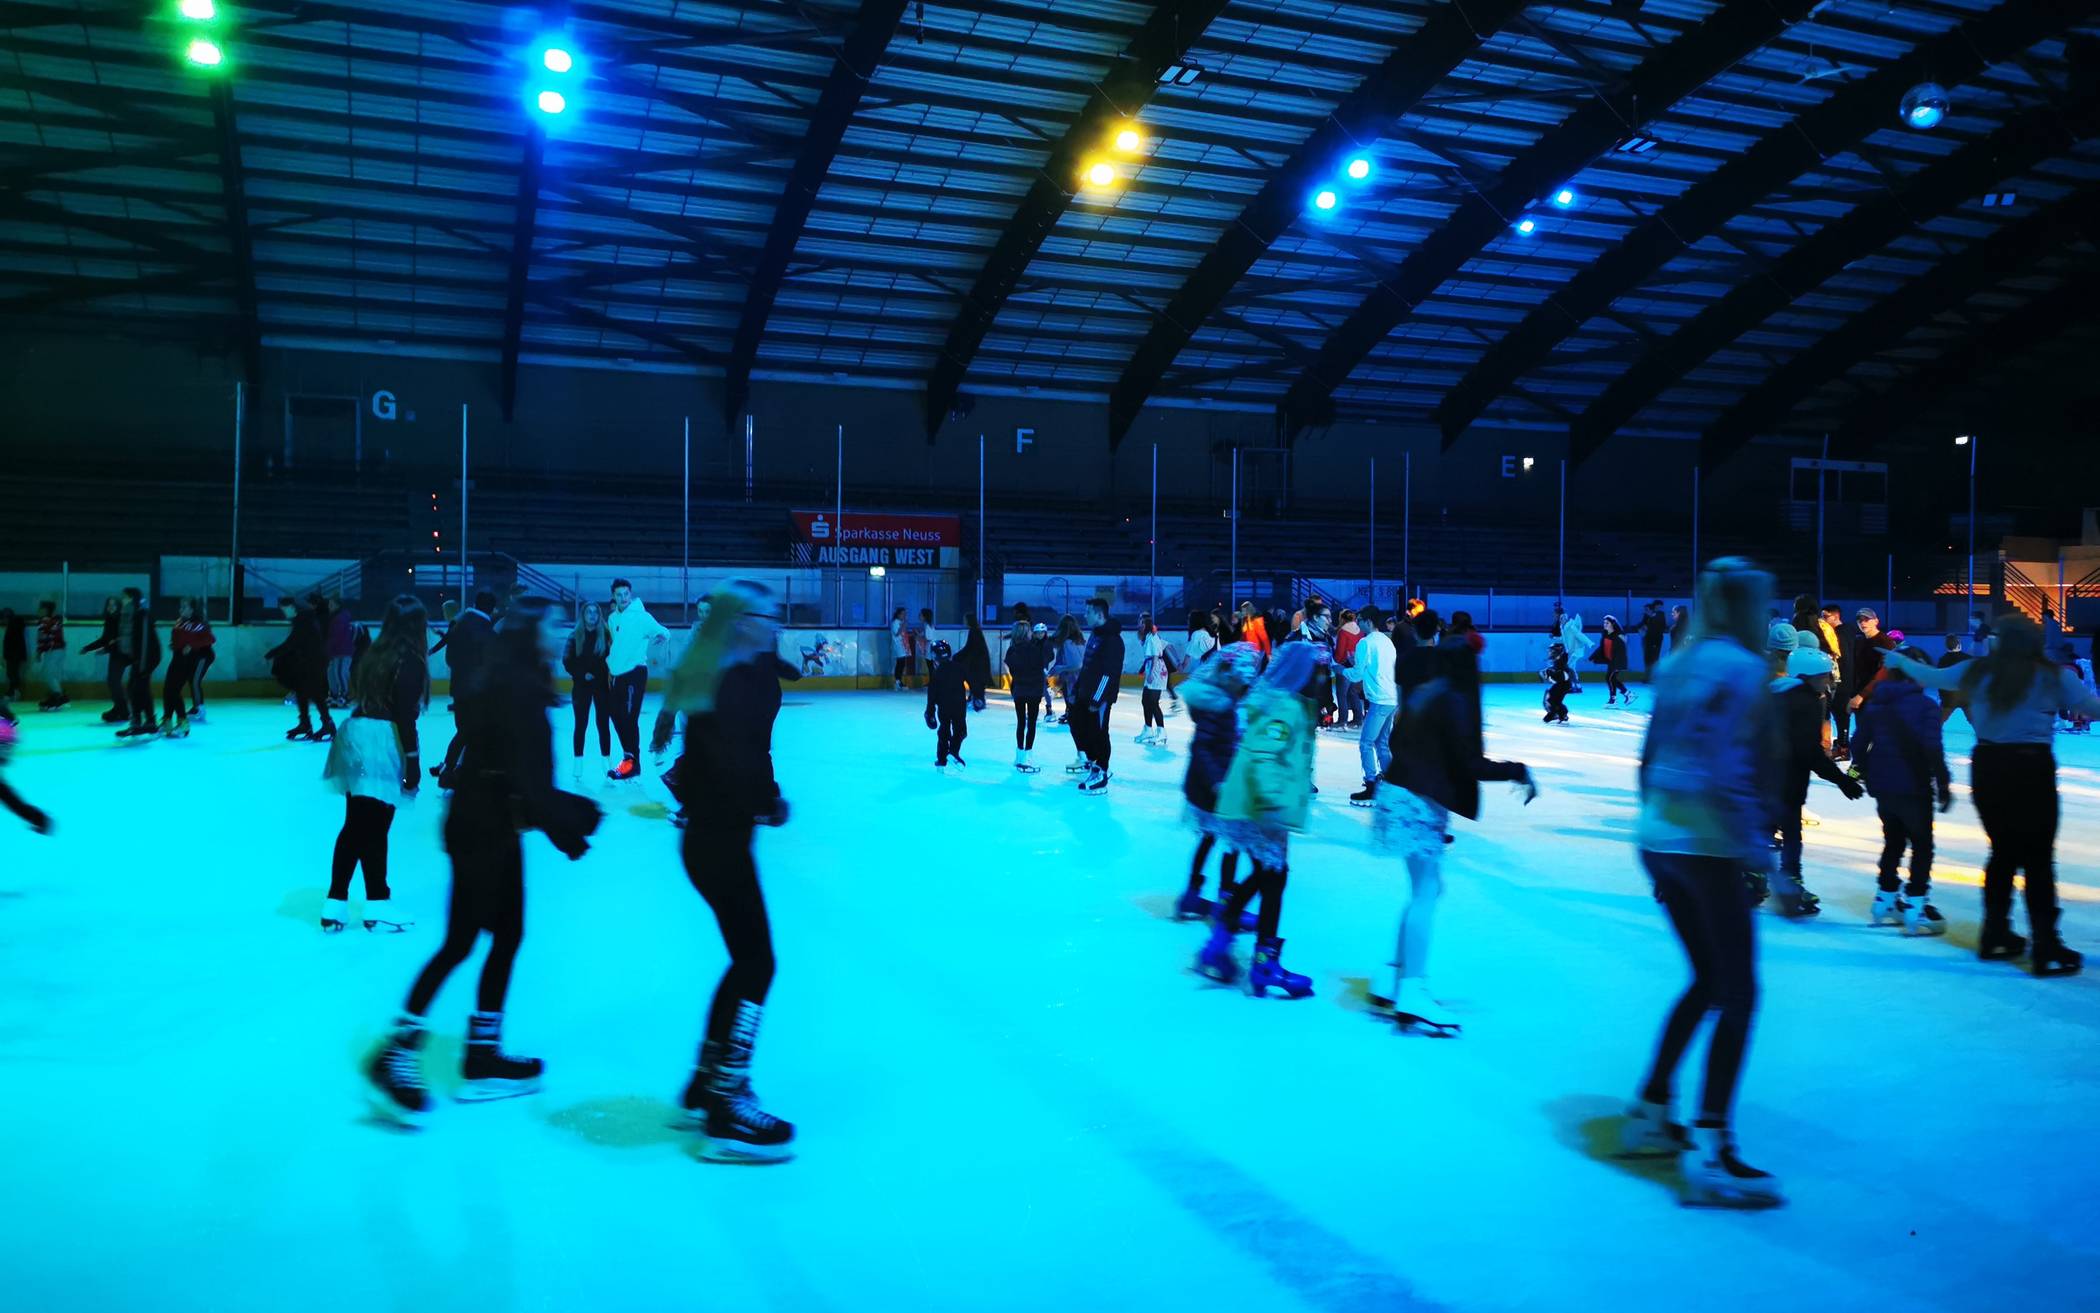  Am Dienstag startet die Neusser Eissporthalle in die neue Saison. 